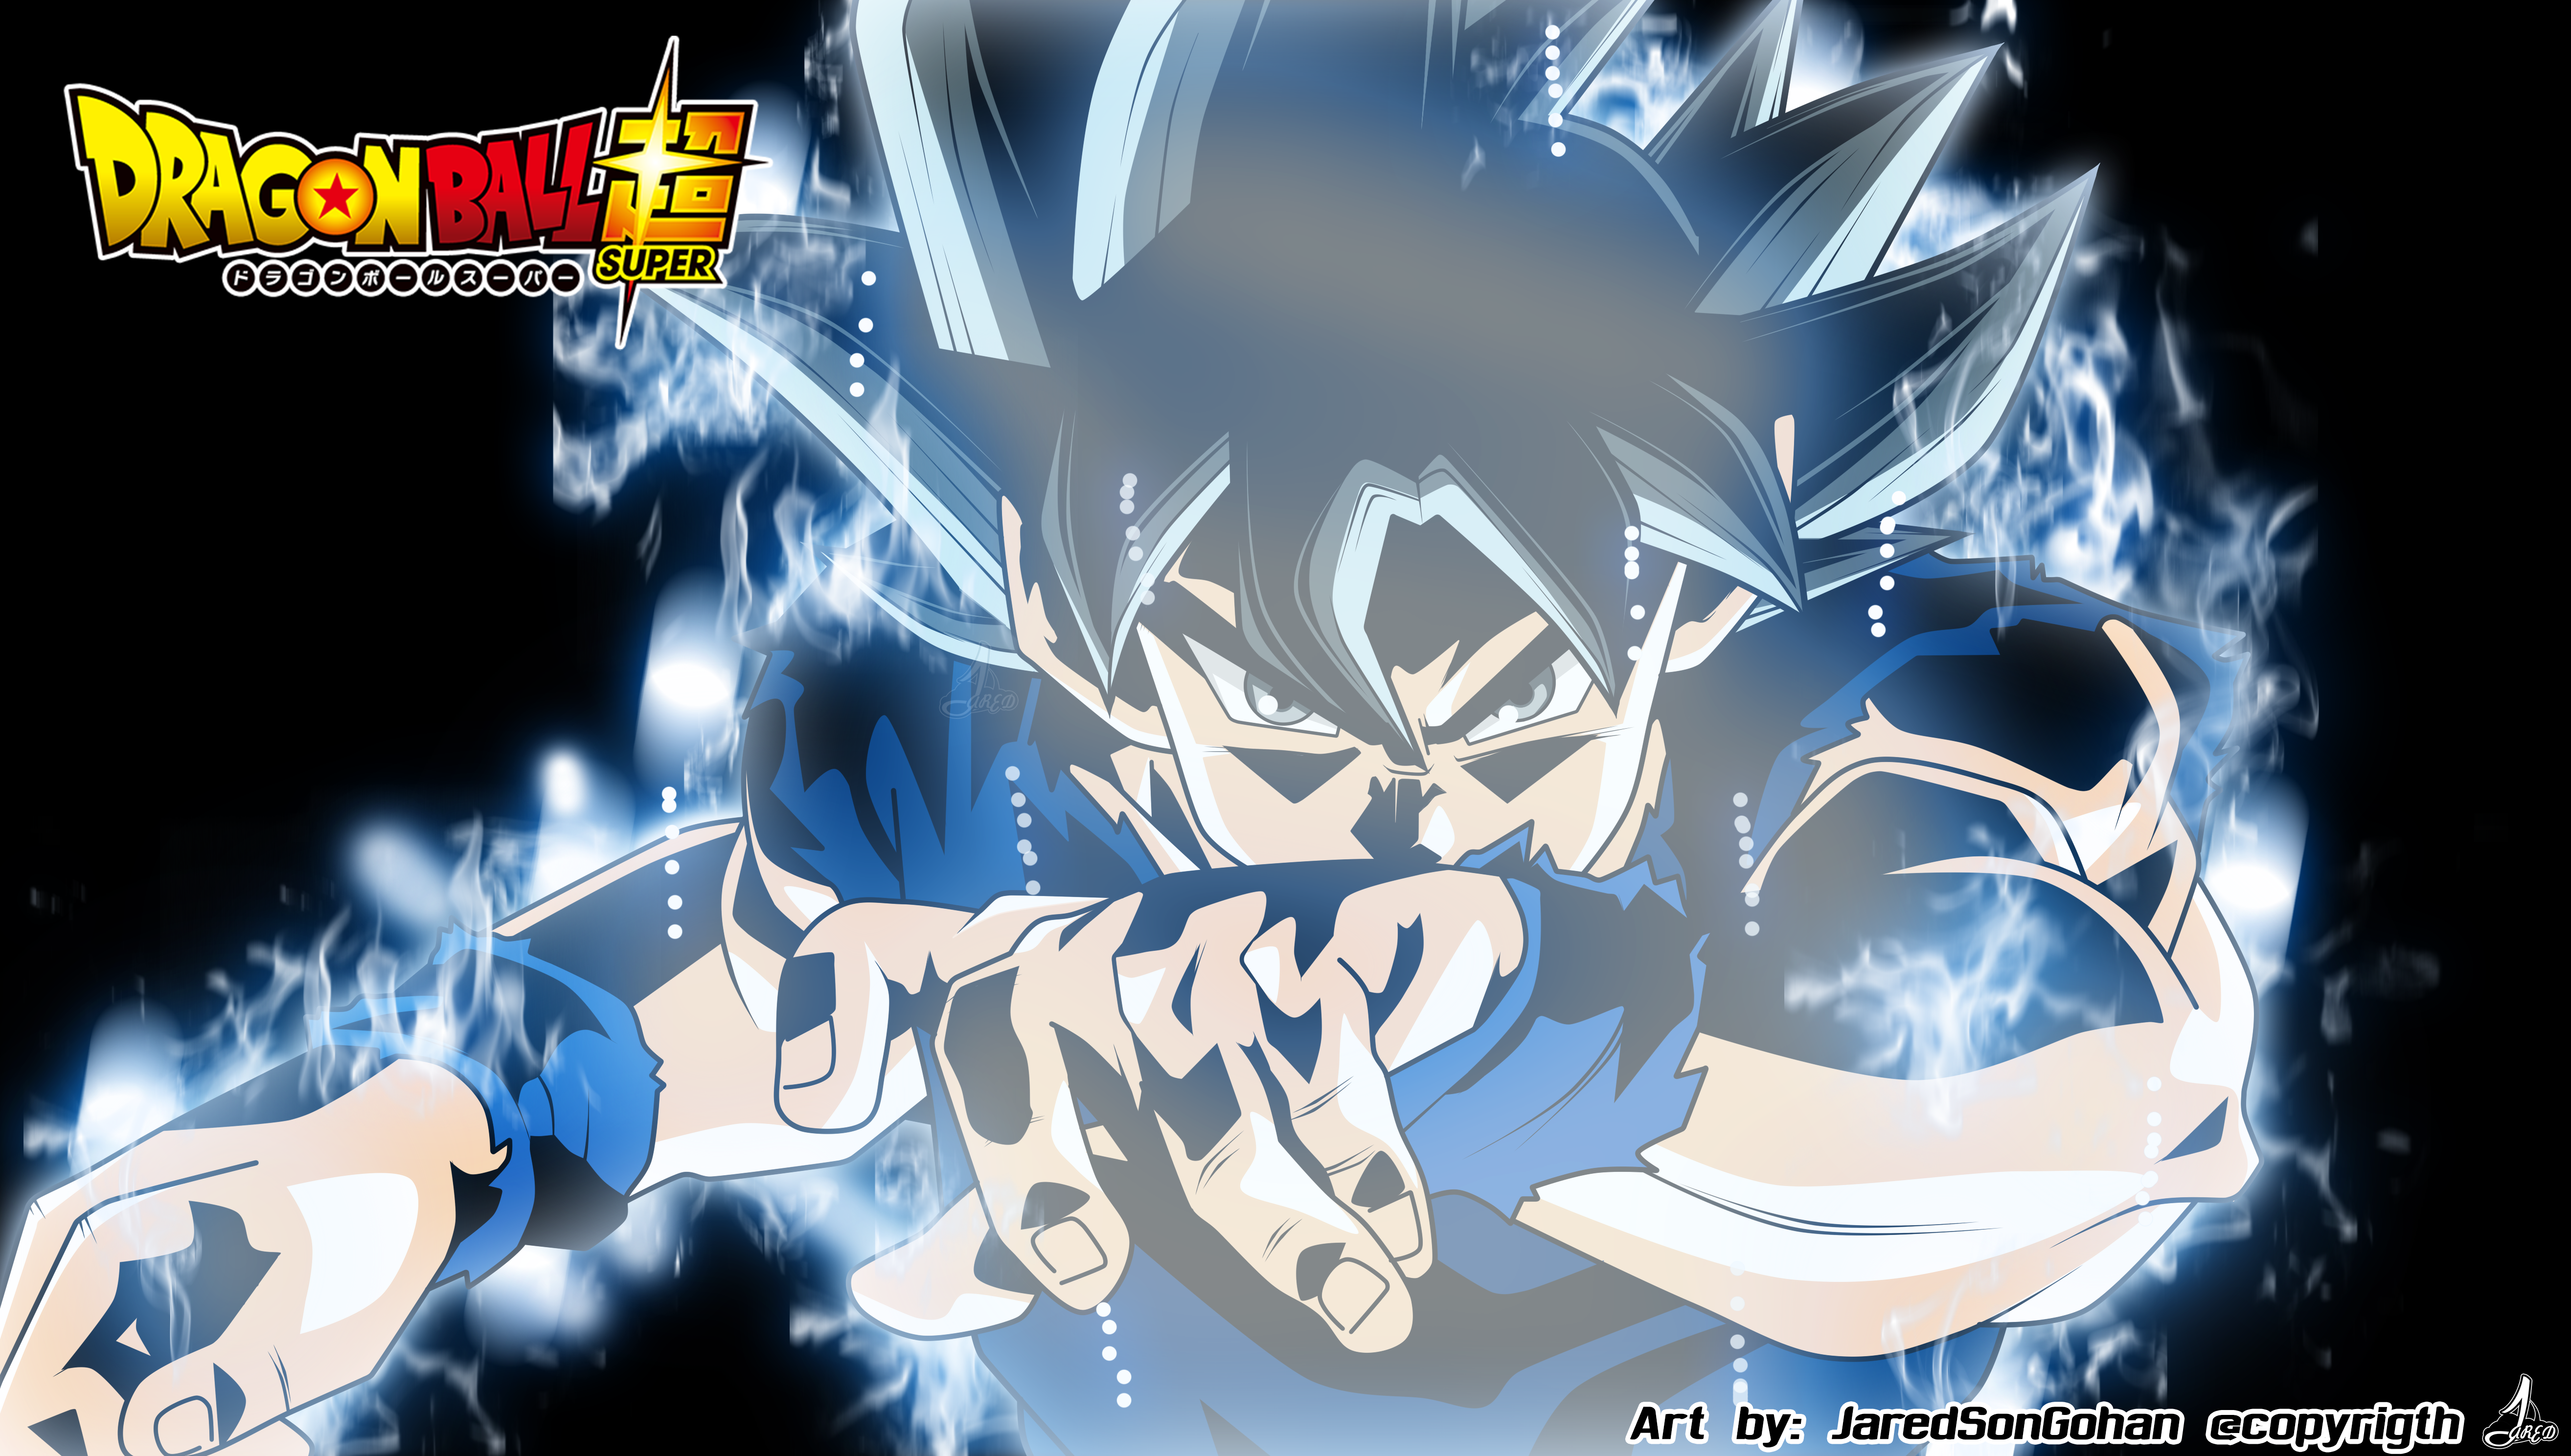 Goku - Instinto Superior Incompleto by Thony99 on DeviantArt